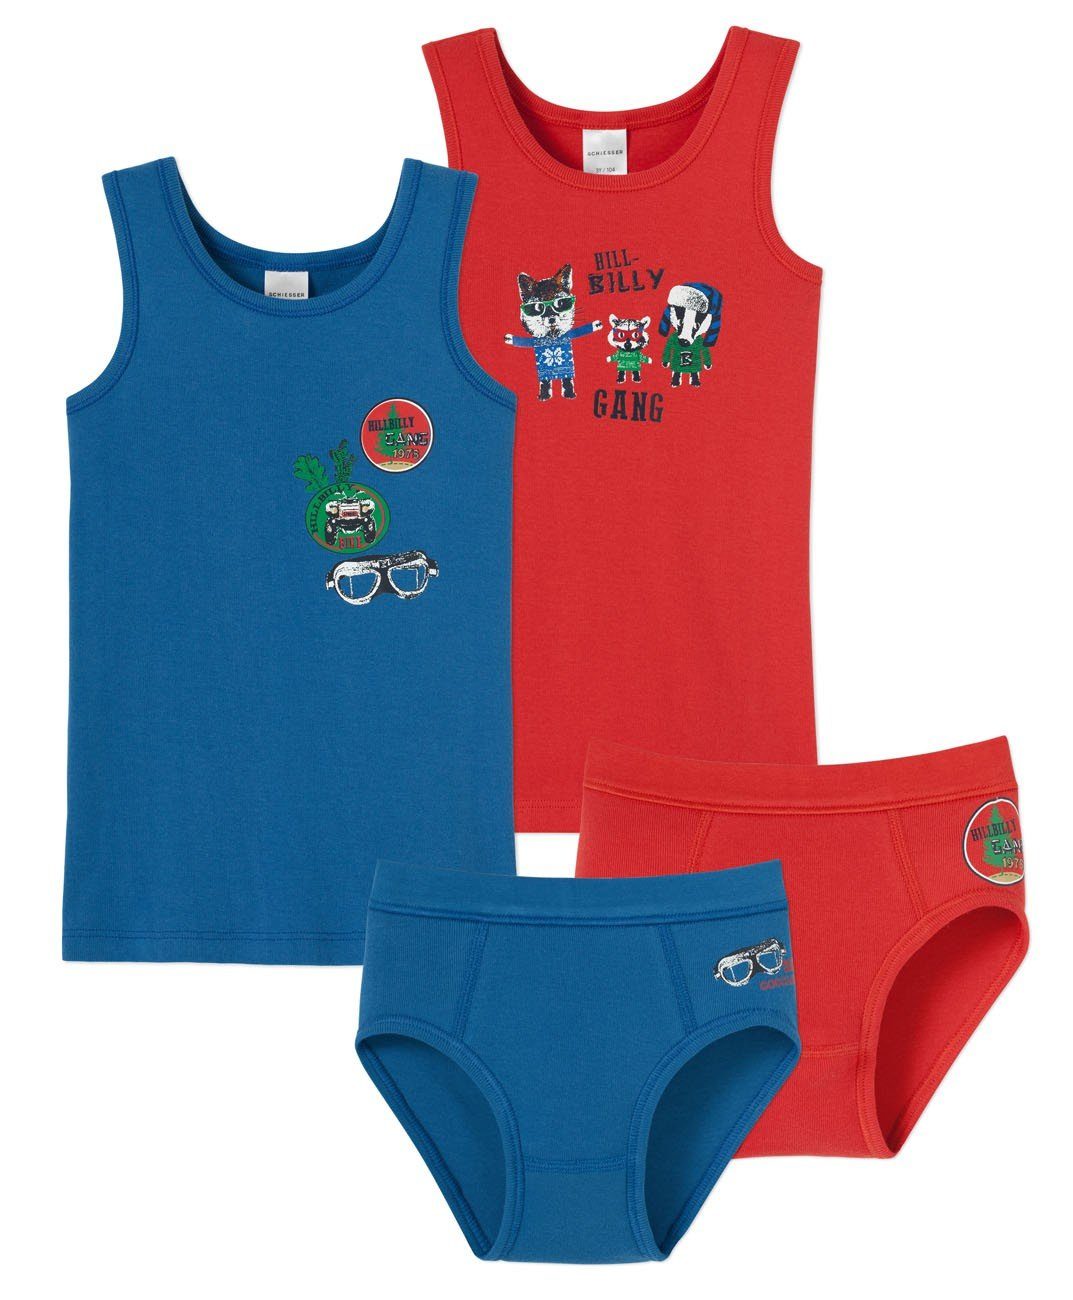 Schiesser Slip (4 St) 4er Set Unterwäsche: 2x Jungen Unterhemd + 2x  Sport-Slip, Feinripp-Qualität, blau+orange online kaufen | OTTO